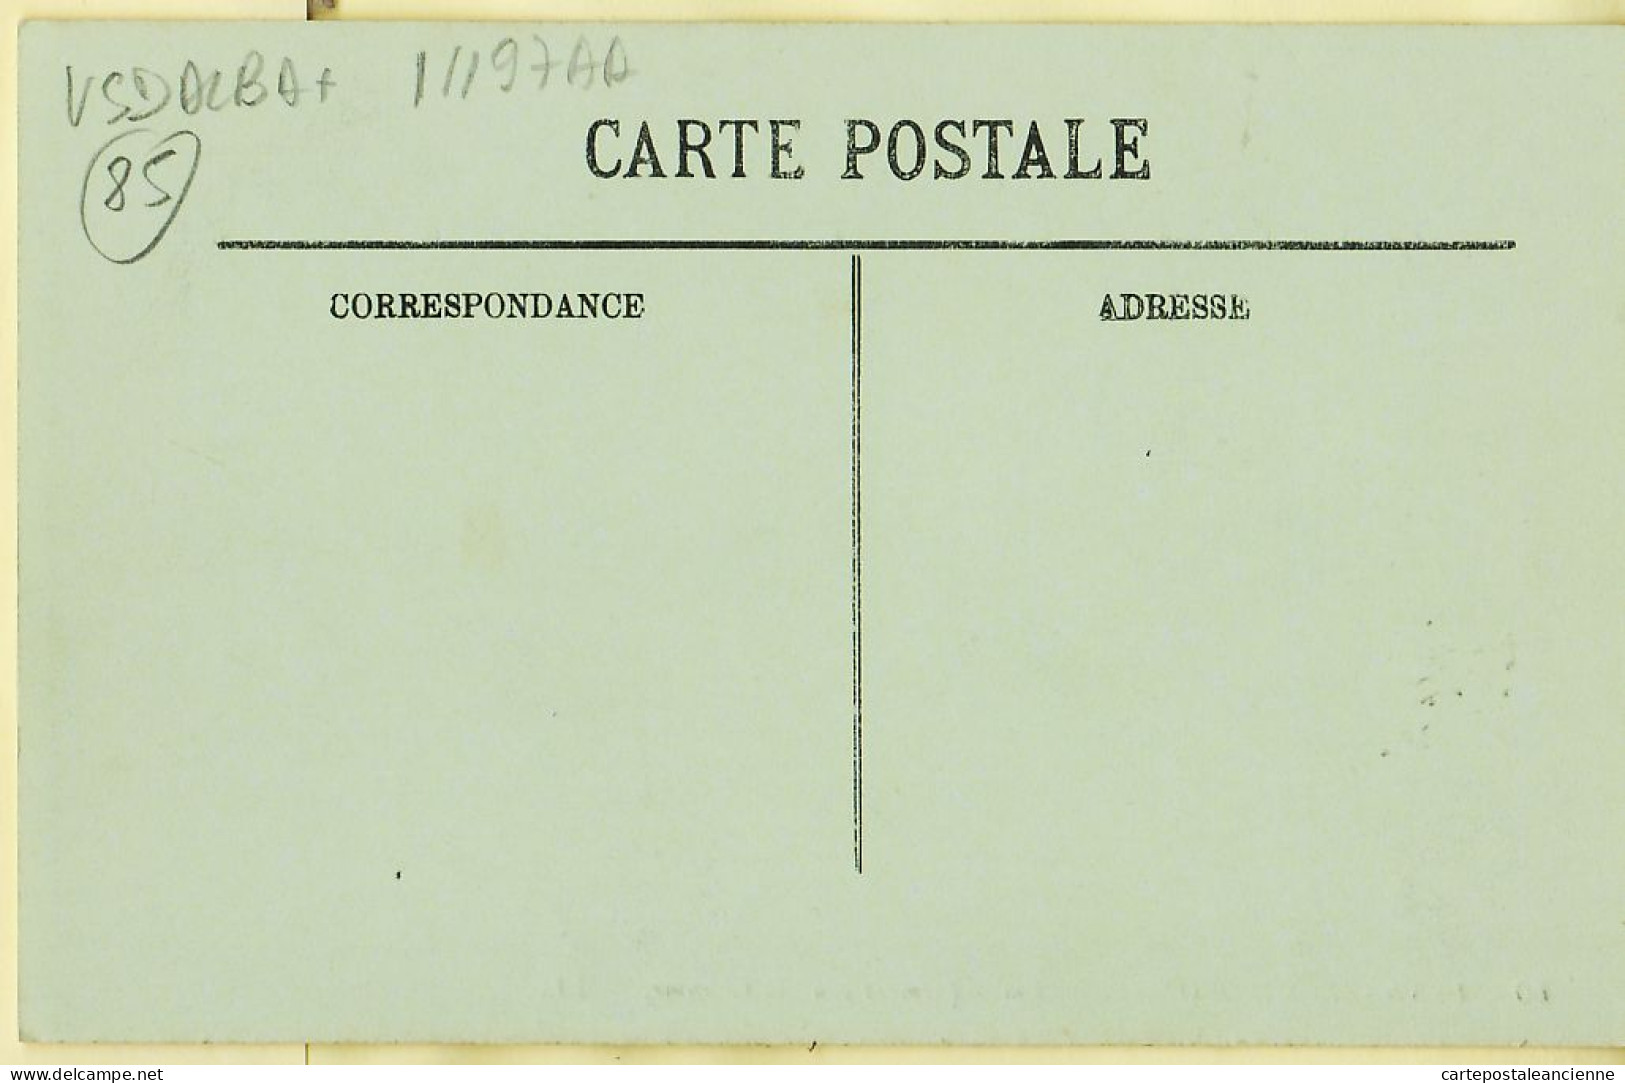 30541 / LES SABLES D'OLONNE Vendée EMBARQUEMENT Pour La CHAUME Port Voiliers Pecheurs 1910s - LEVY 60 - Sables D'Olonne